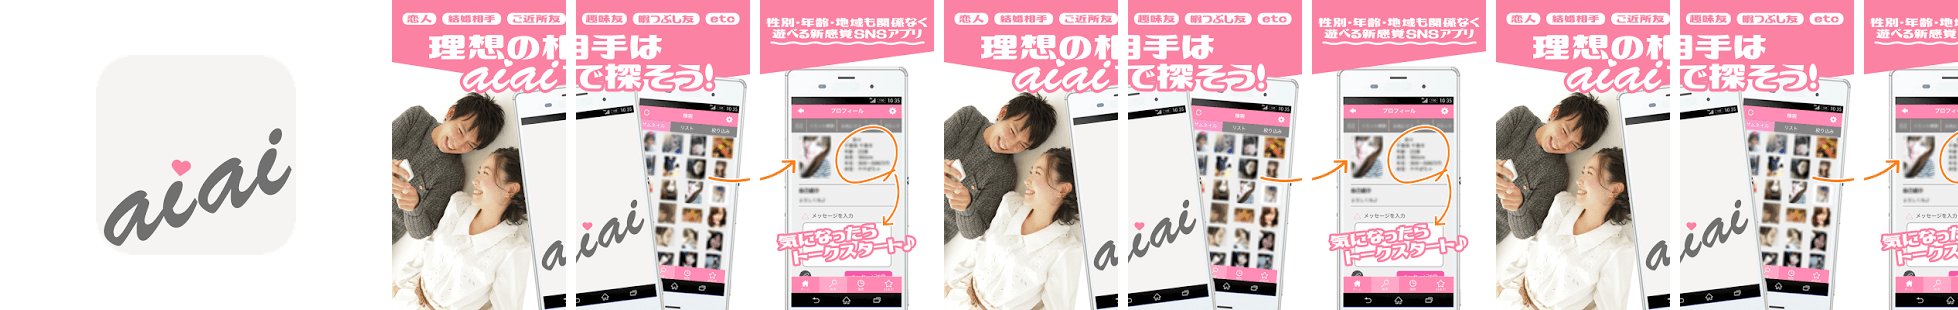 婚活・恋活はaiai-出会い系チャットアプリ